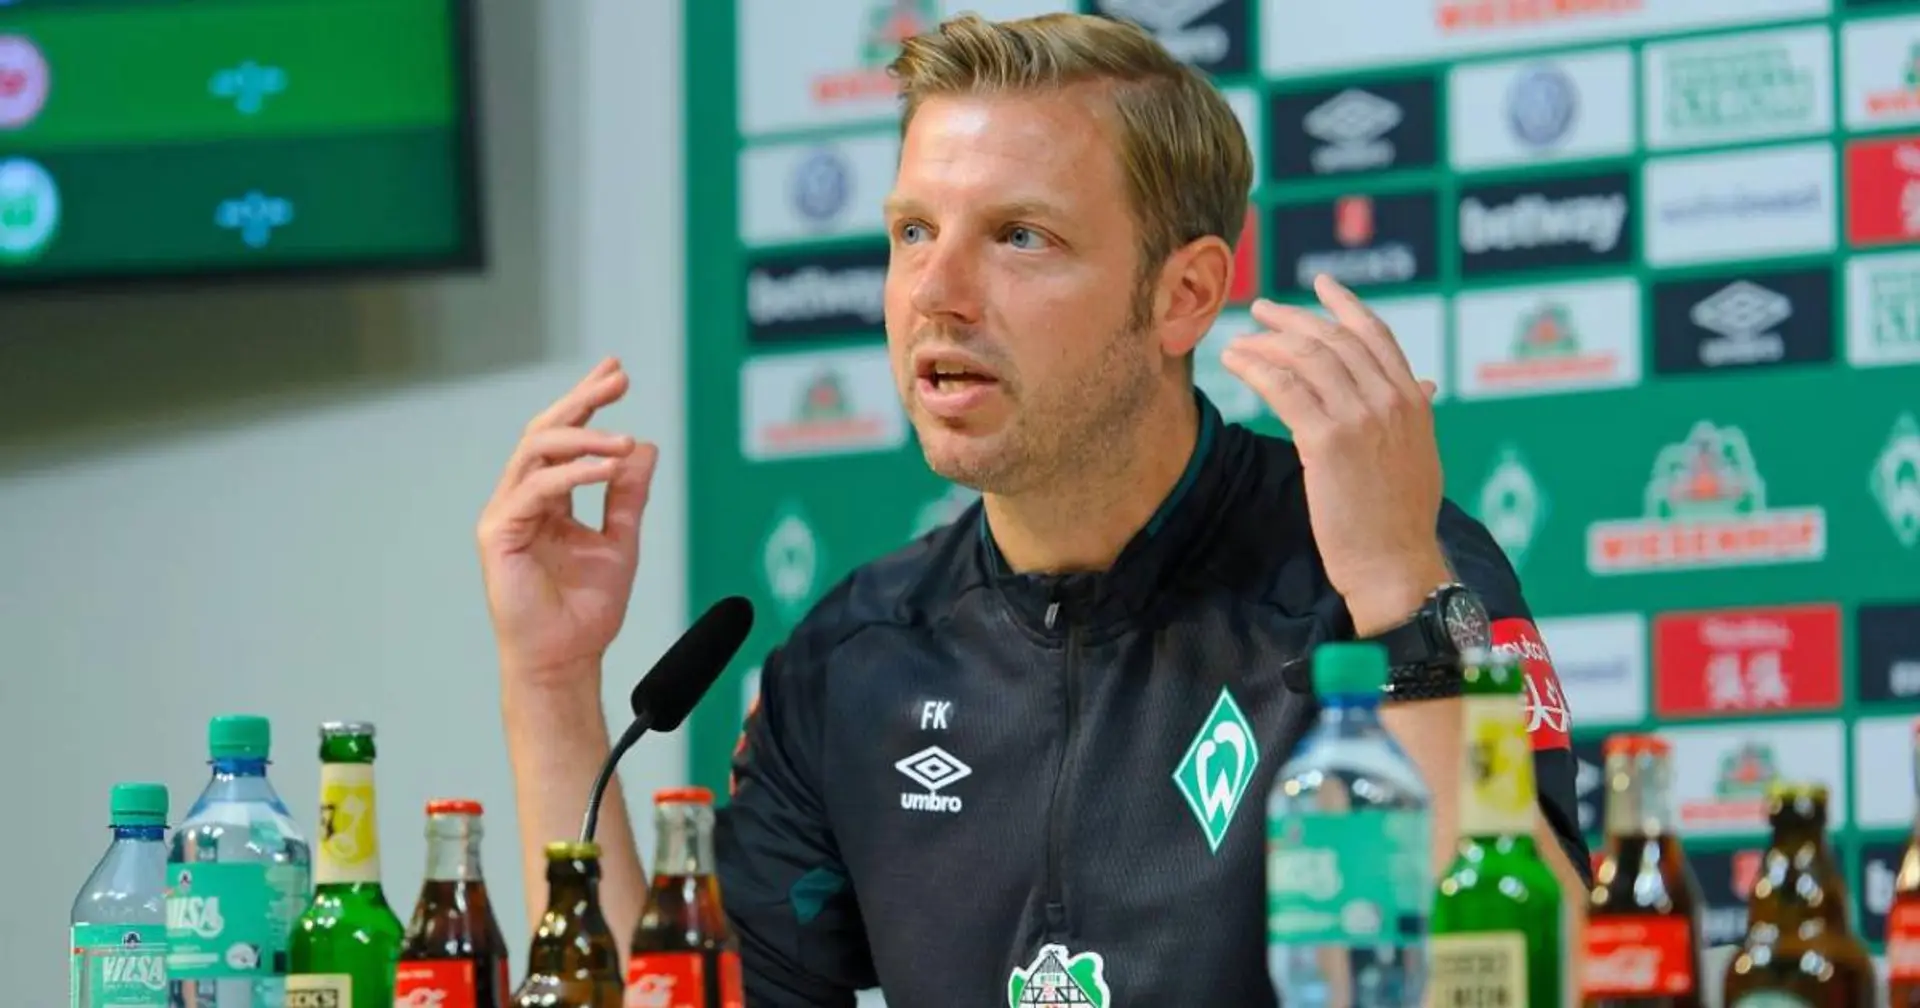 Werder-Coach Kohfeldt vor dem Duell vs. Bayern: "Wir gehen in das Spiel, um zu punkten"